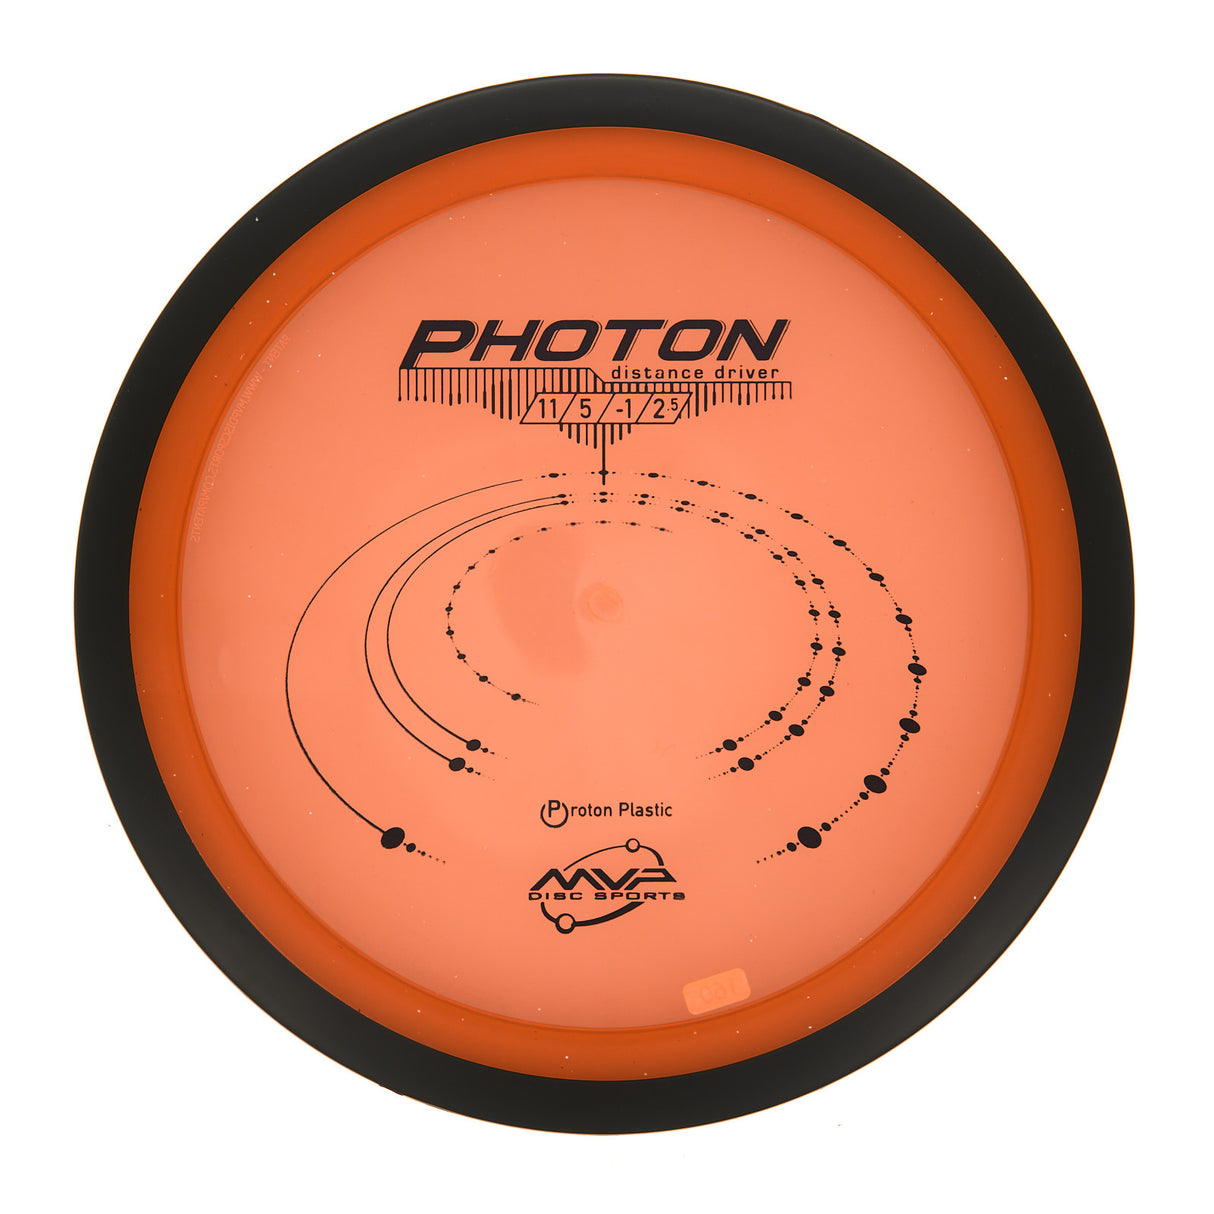 MVP Photon - Proton 160g | Style 0001